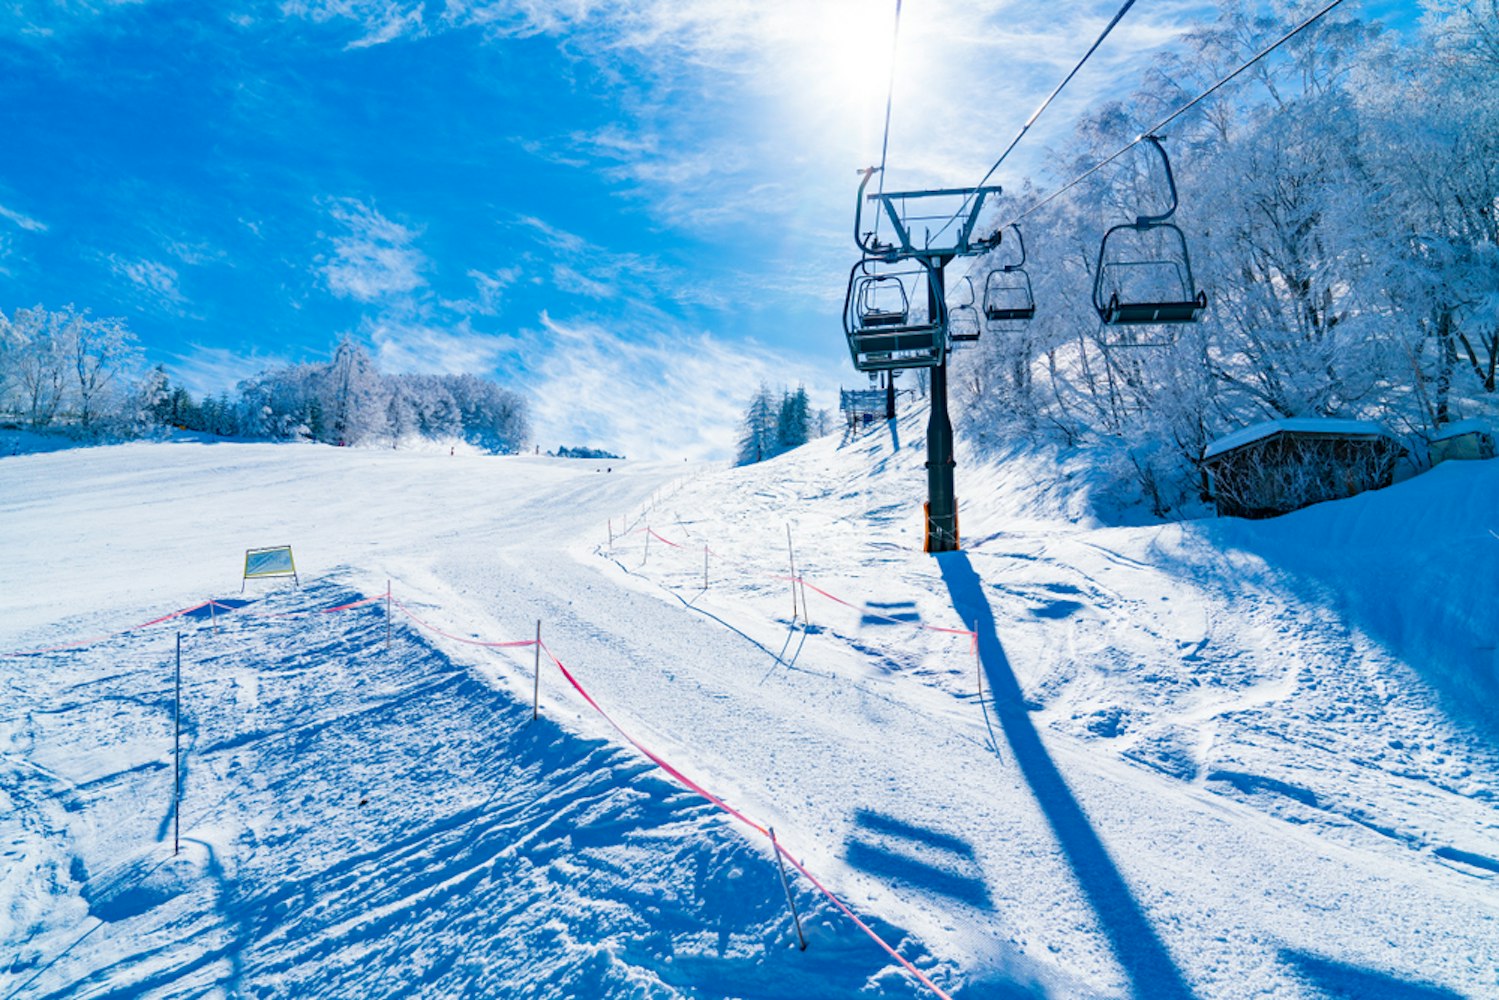 Shiga Kogen Ski Resort